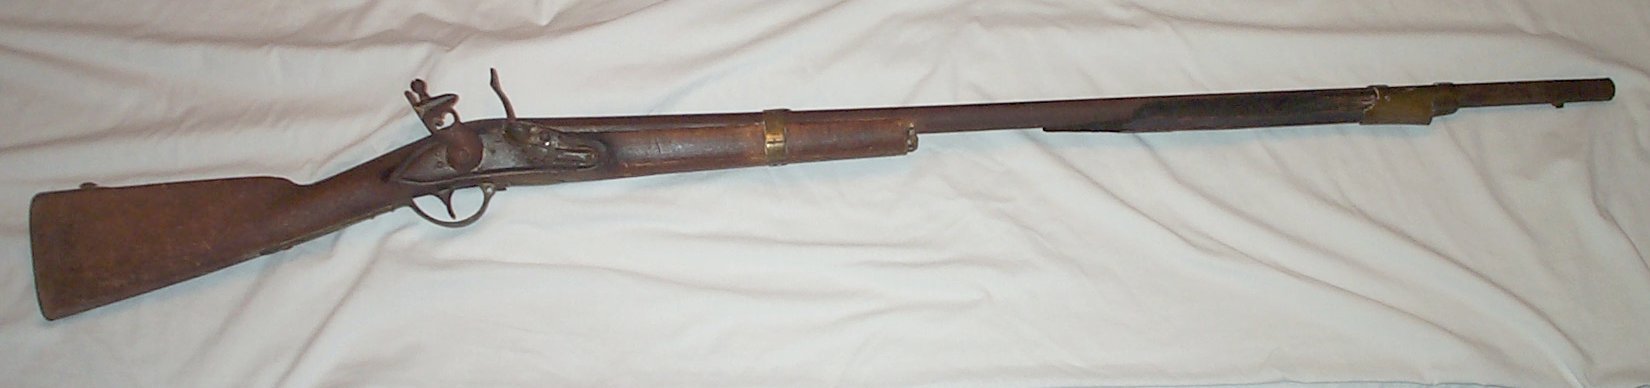 musket1.jpg